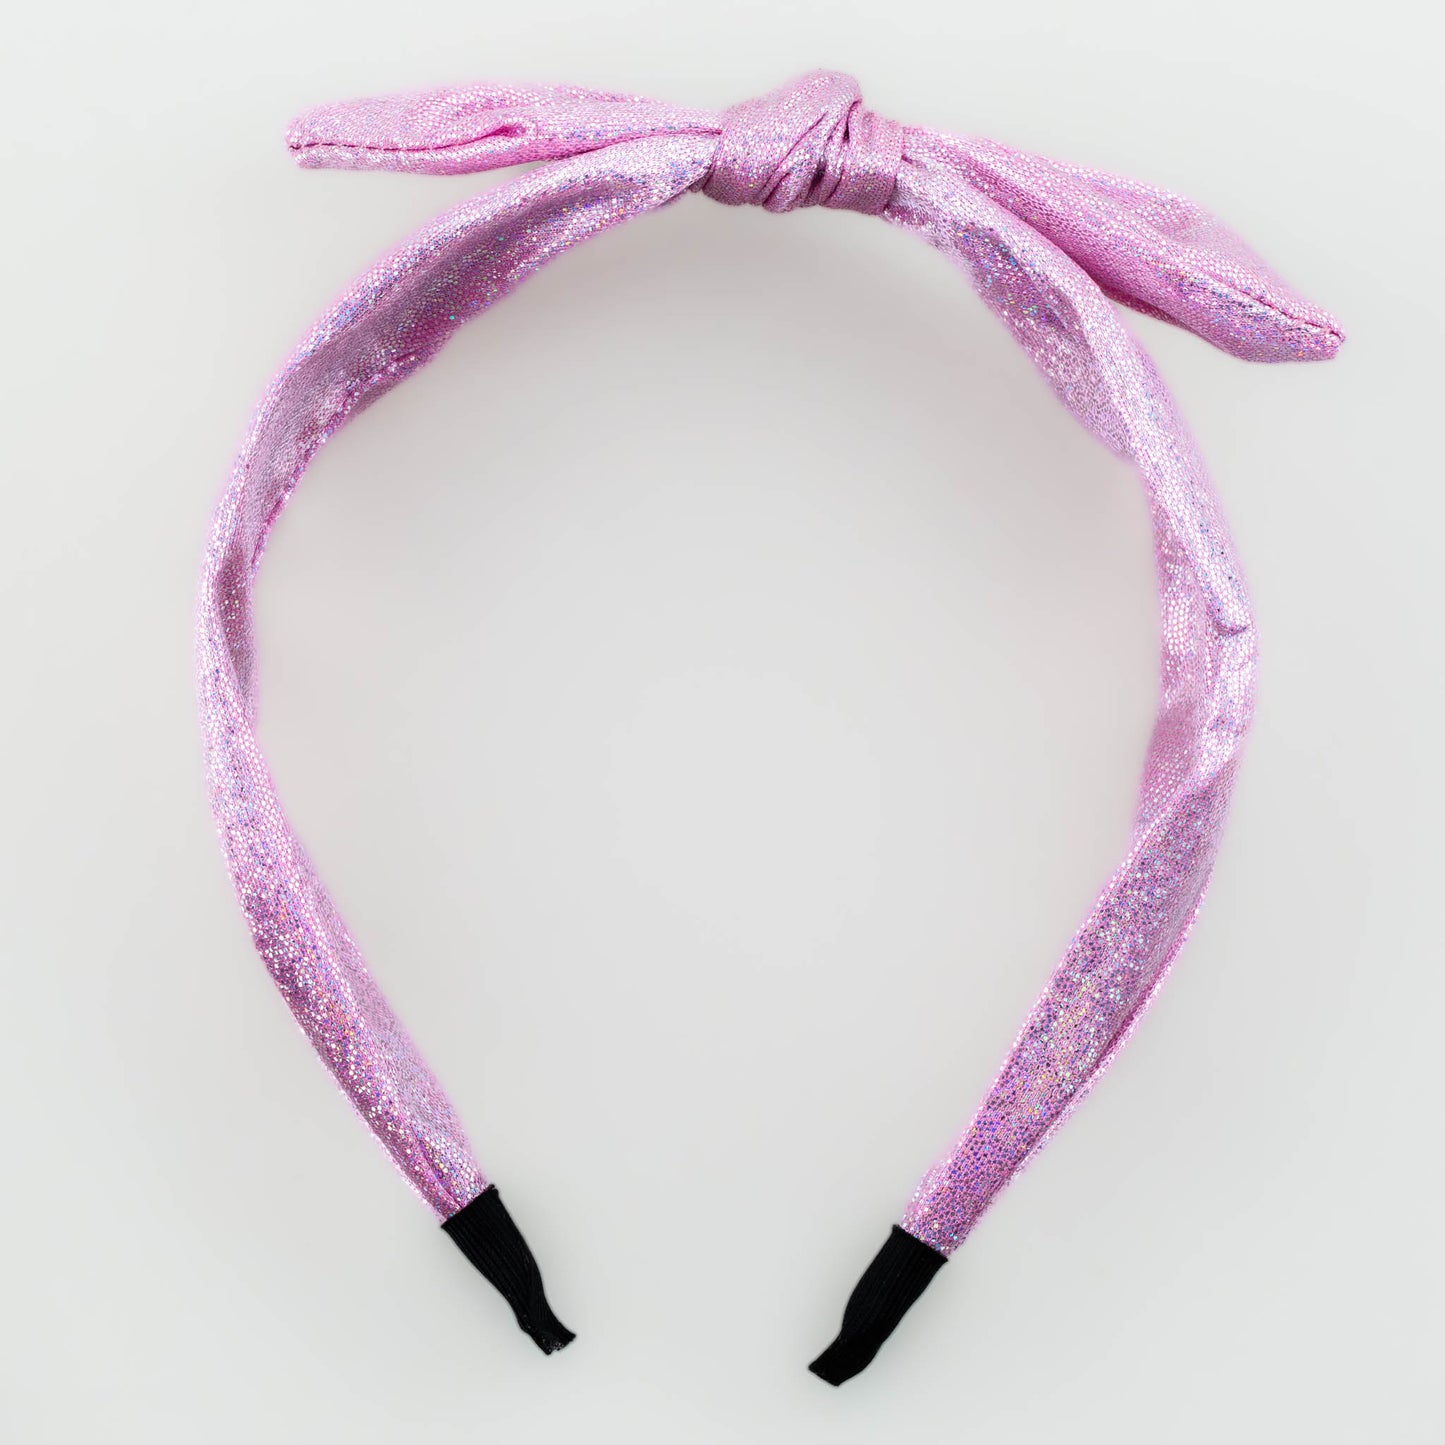 Cordelută de păr lată cu nod și fundă maleabilă, textură satinată cu fir sclipitor - Roz